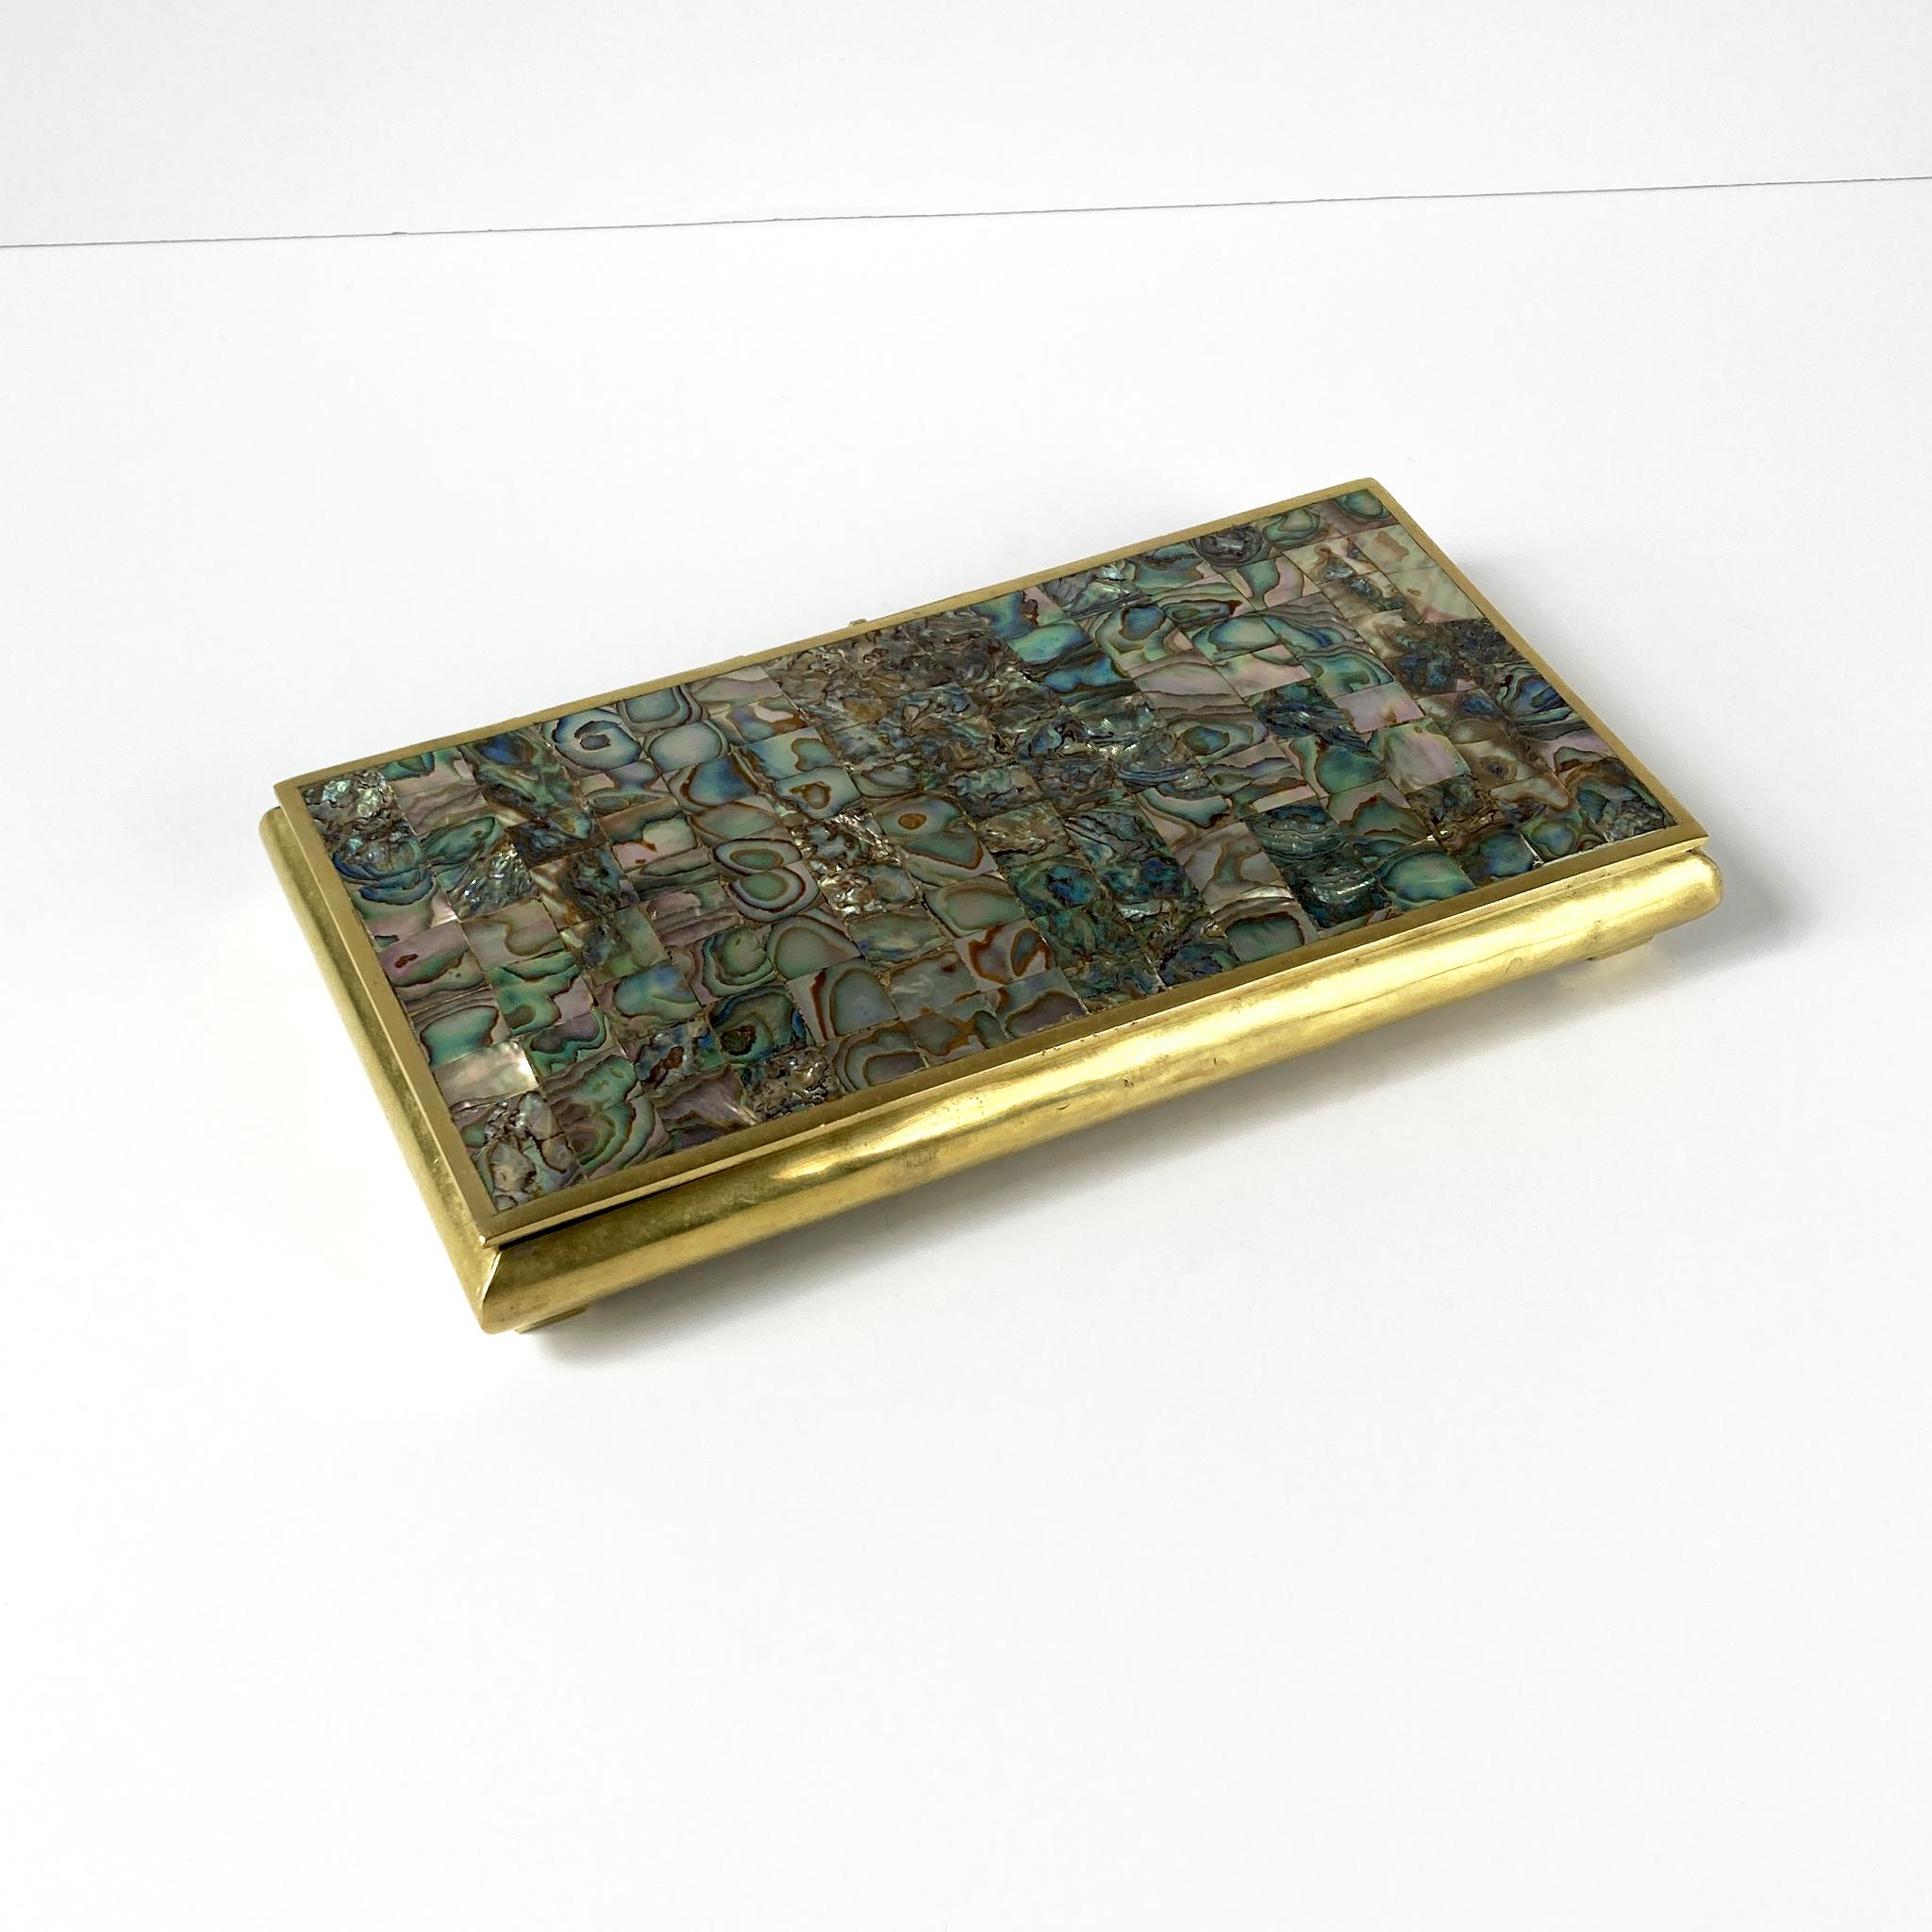 Wunderschöne Scharnierdose aus Messing mit Abalone-Mosaik auf dem Deckel, mit Holz ausgekleidet. Das Muster des Mosaiks steht in schönem Kontrast zum Messing; das Schillern der Abalone leuchtet in Grün-, Hellbraun- und Rosatönen. Dieses Stück sieht